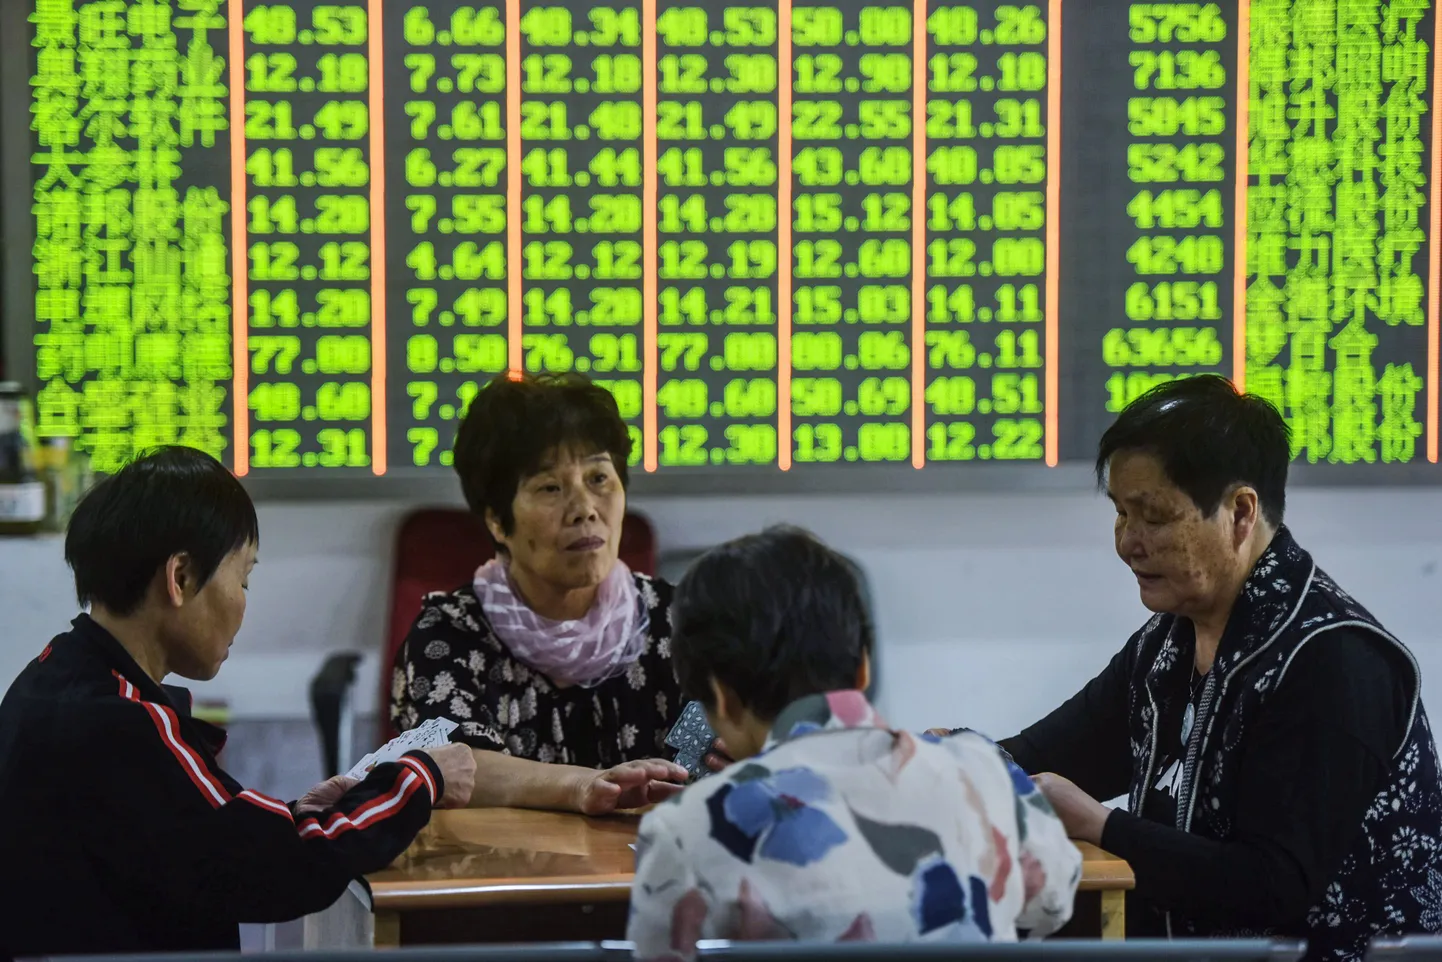 Hiina investoritel jätkub lisaks börsi jälgimisele aega ka muudeks tegevusteks